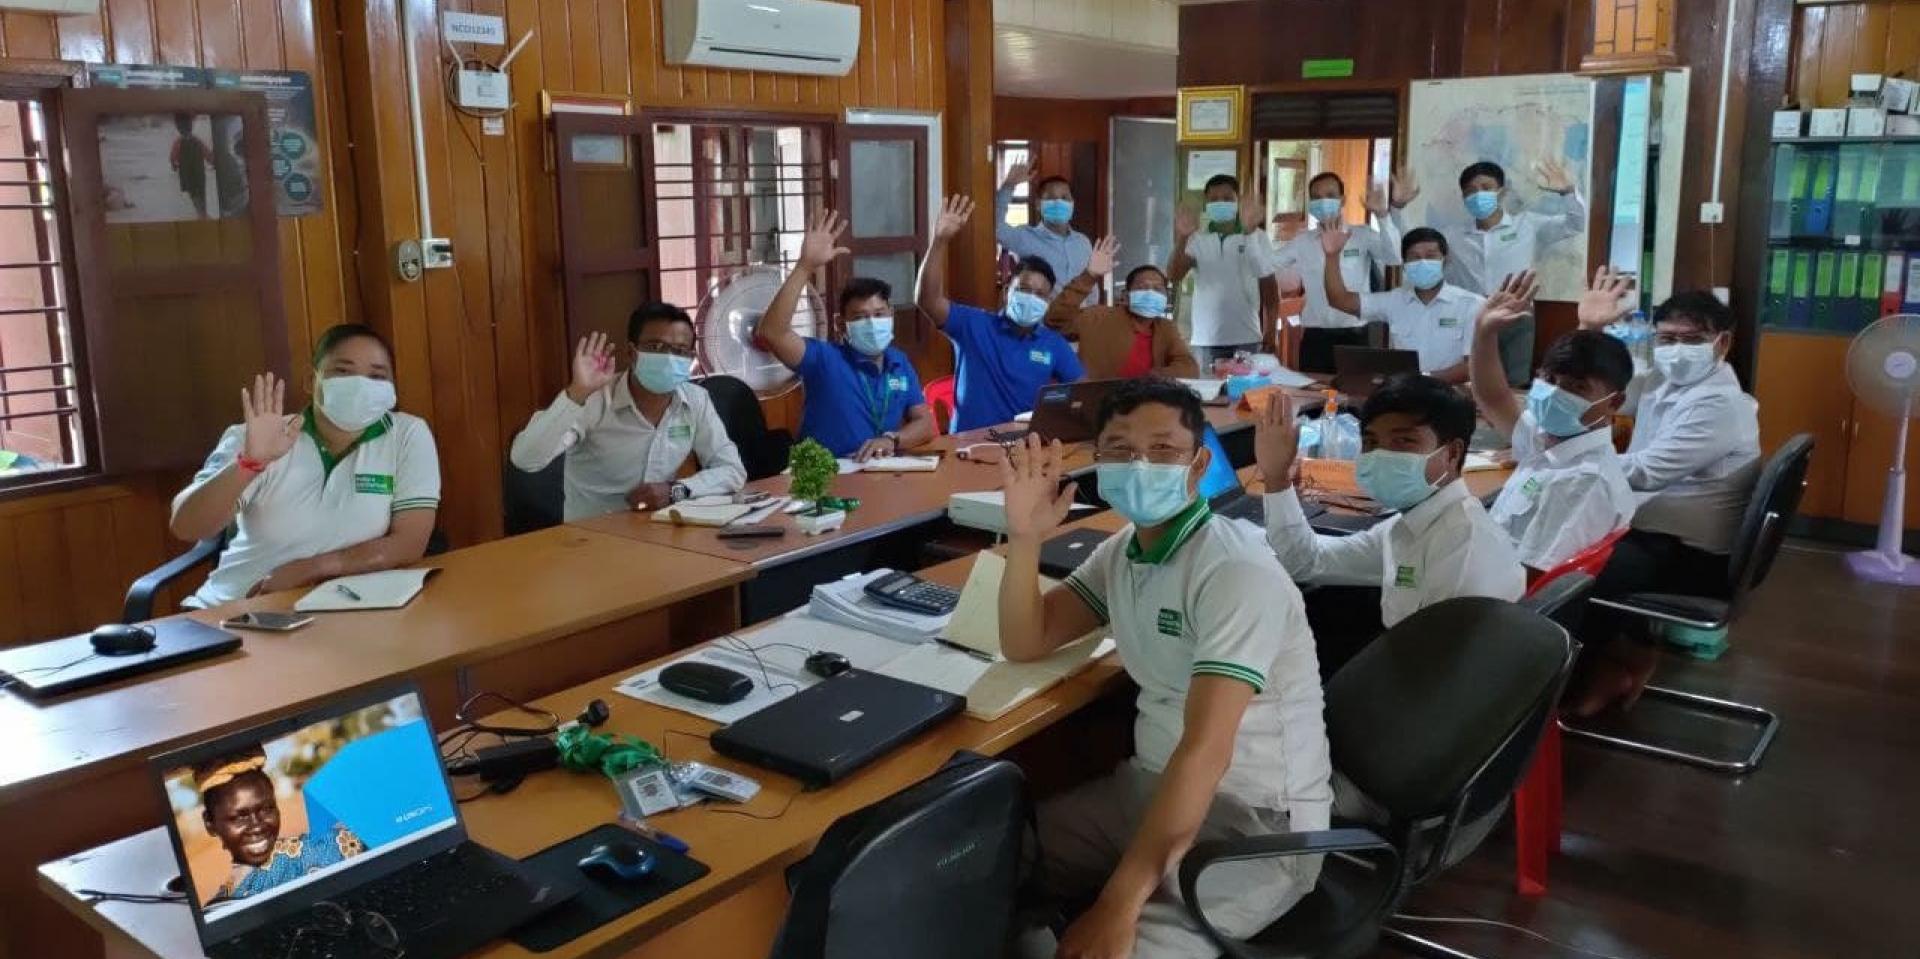 Malaria Consortium, one of the sub-recipients in Cambodia, conducted internal PSEA training for staff members ©Malaria Consortium